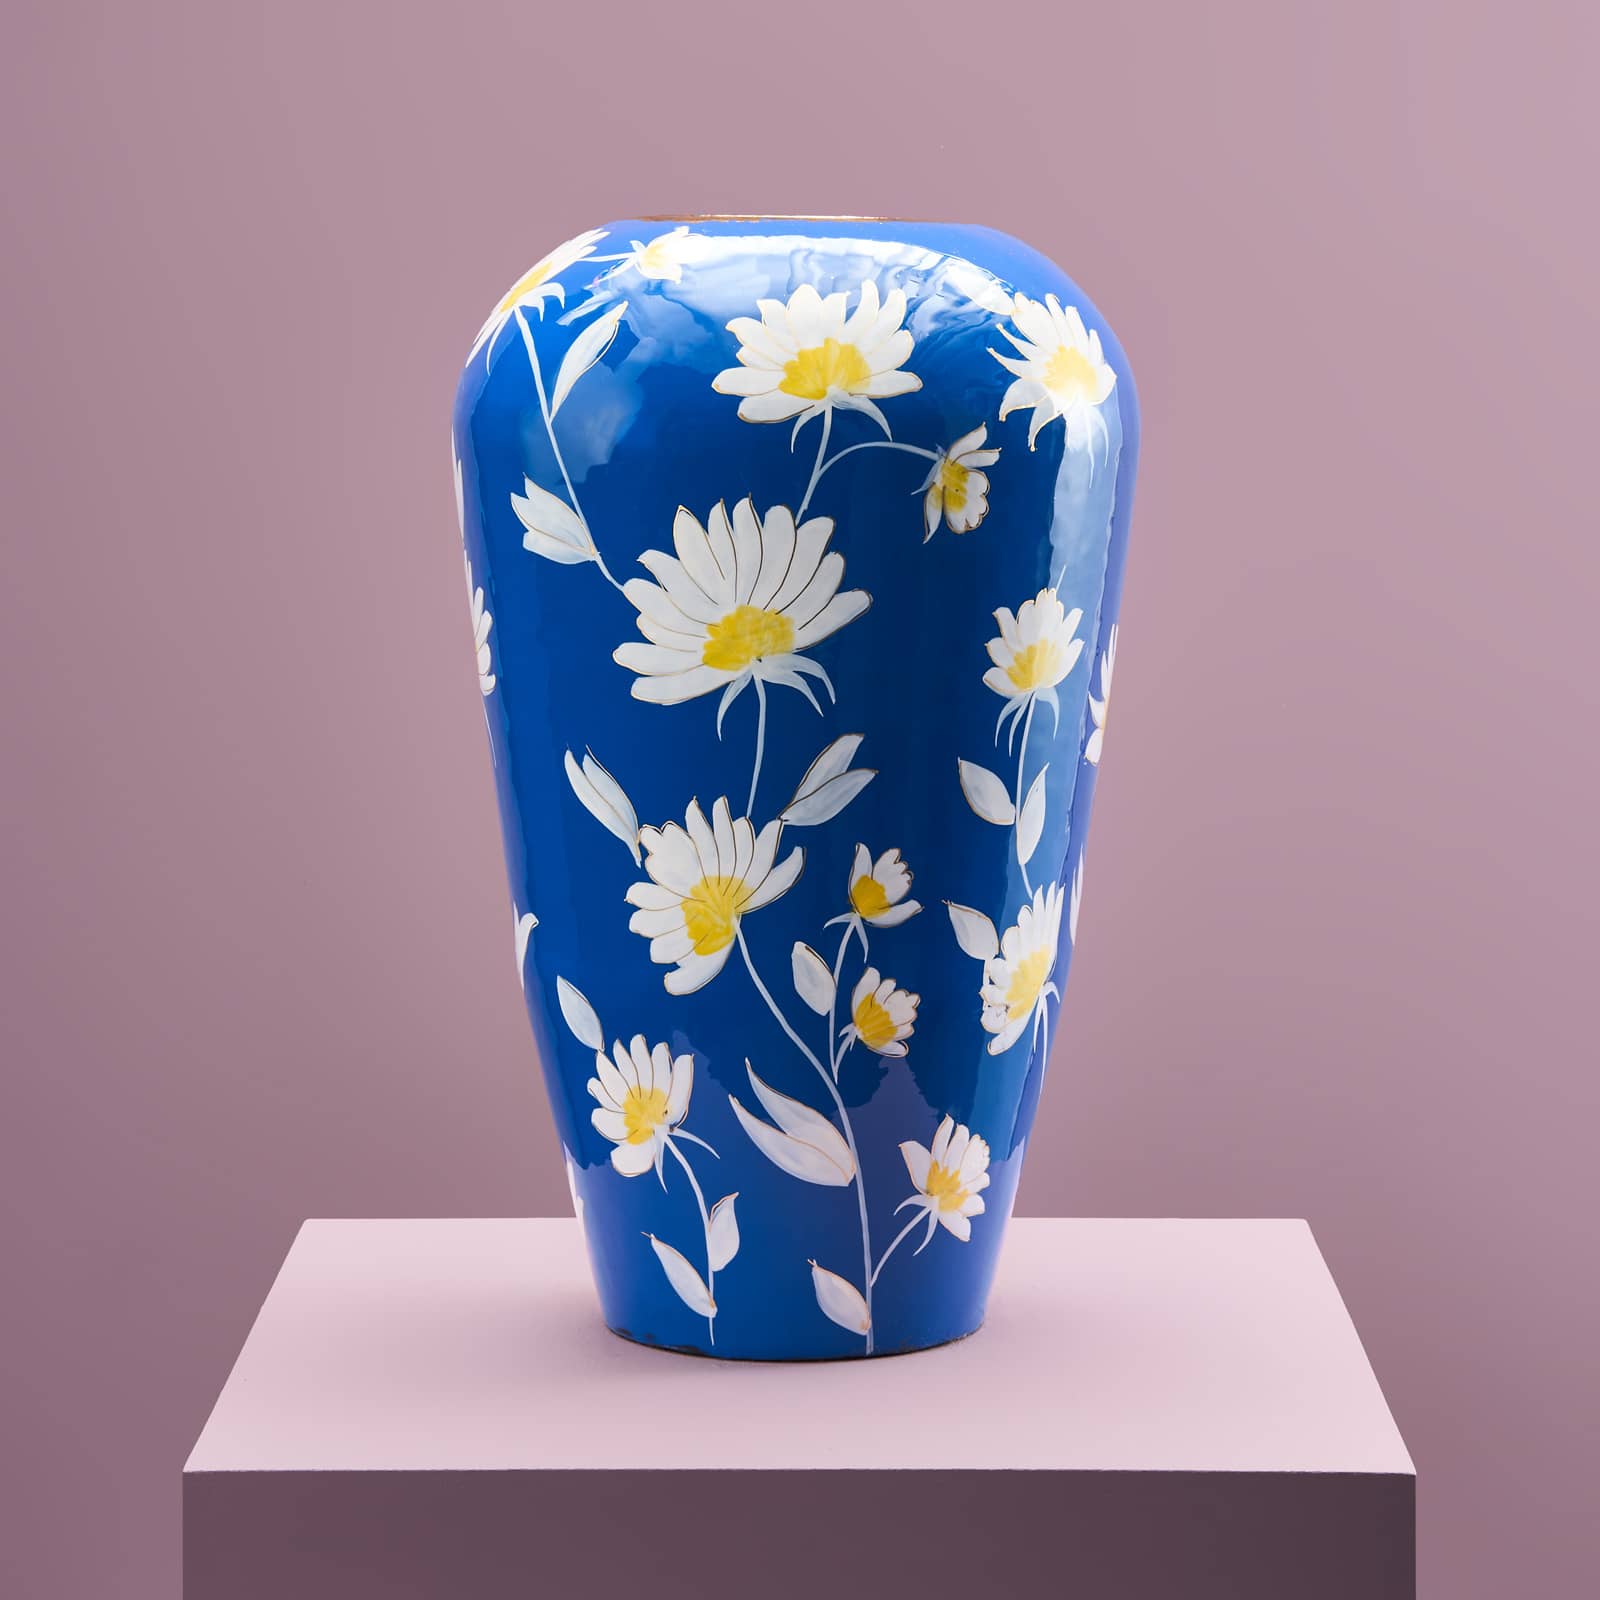 Vase Margarita L, blau